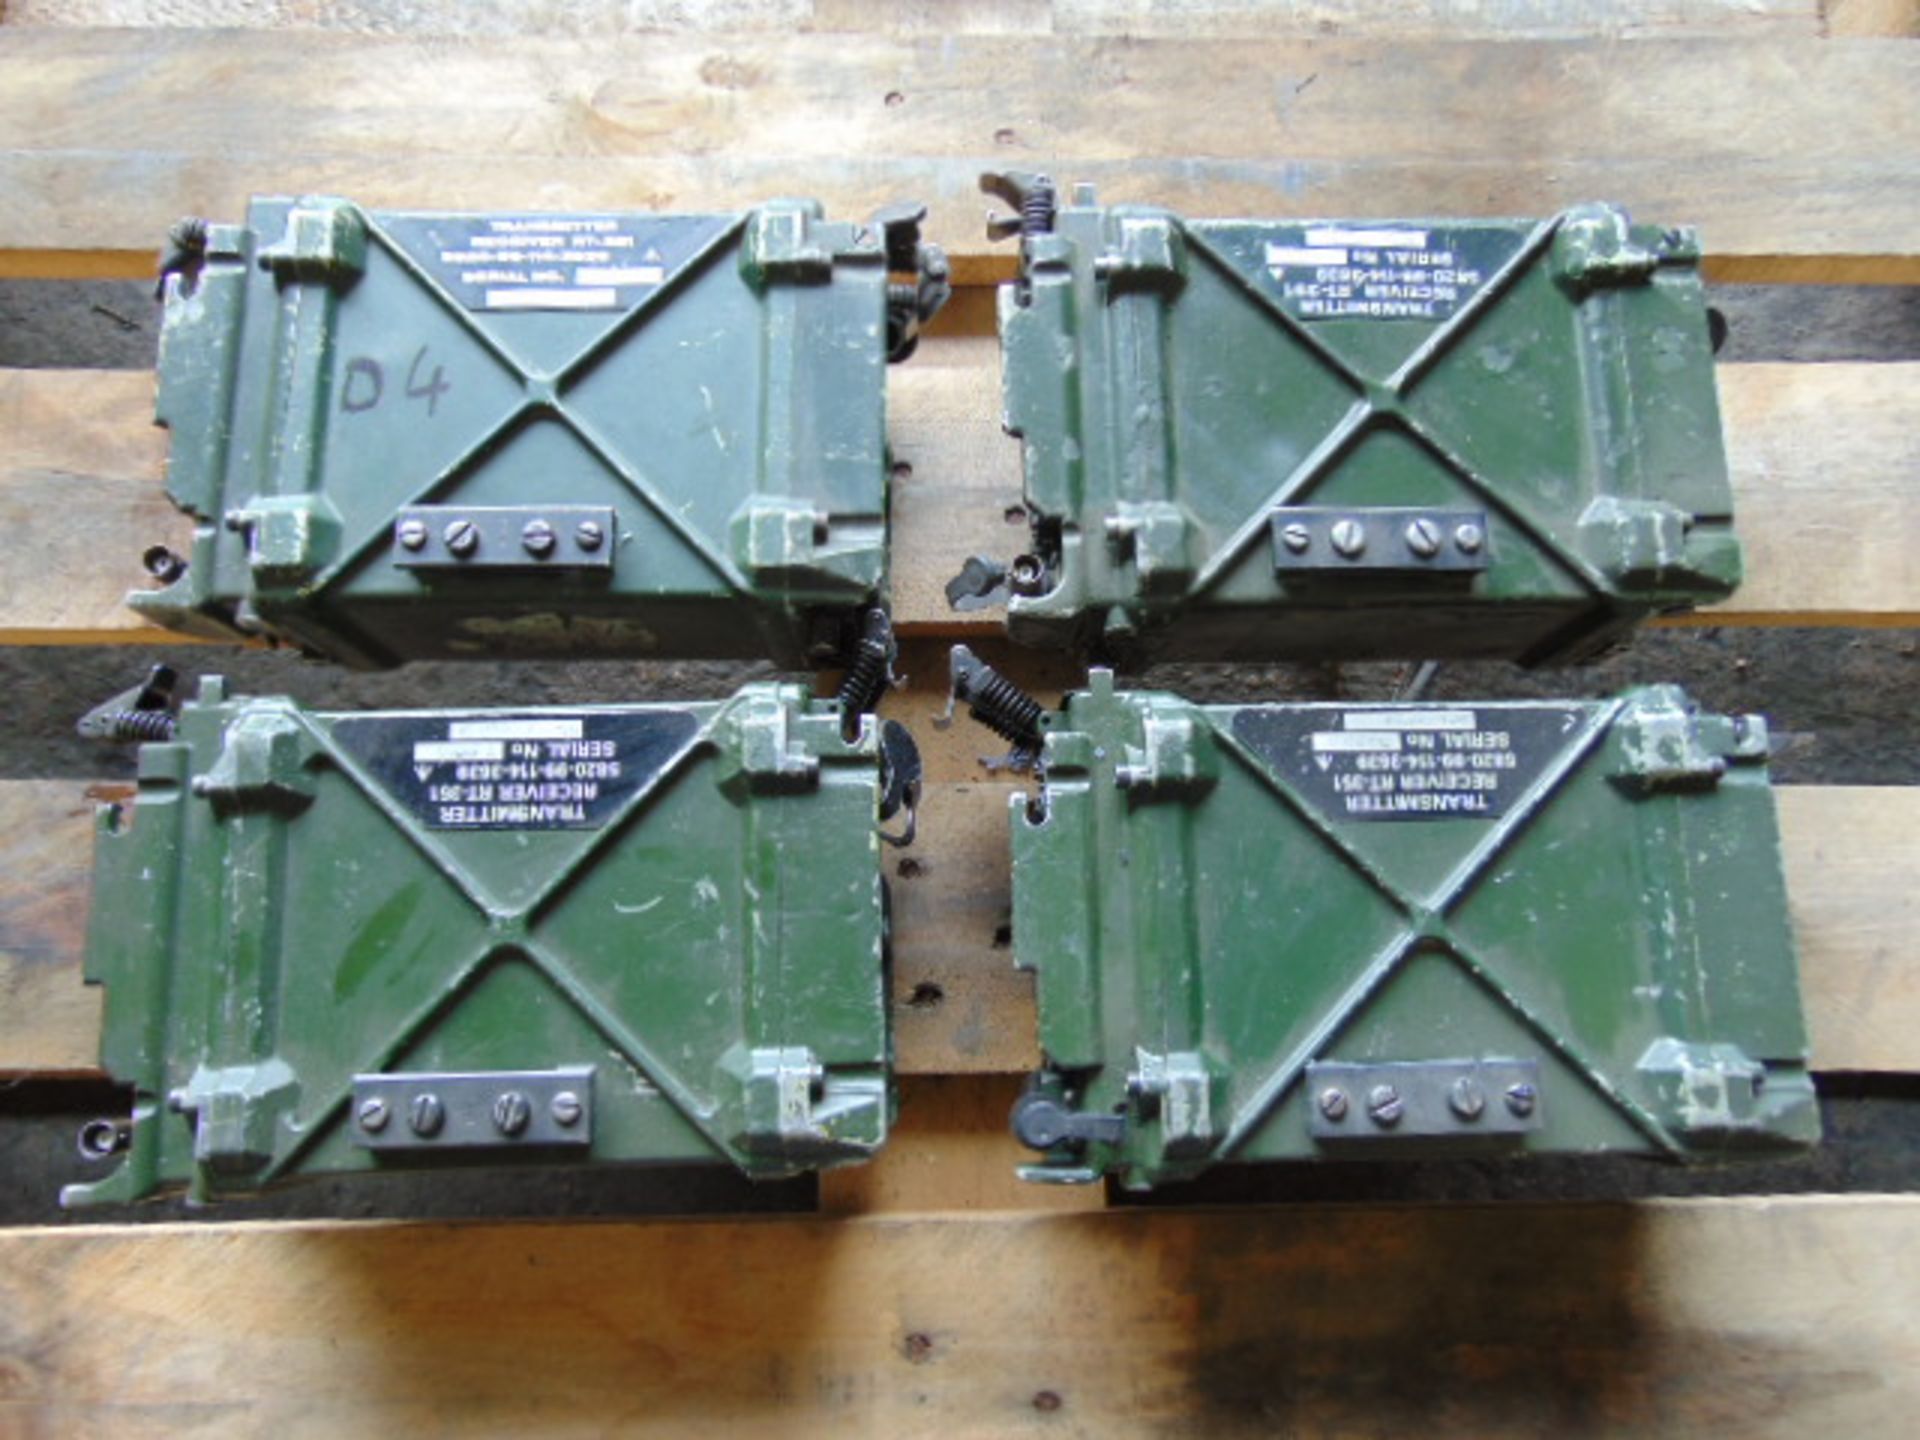 4 x Clansman RT- 351 Transmitter Receivers